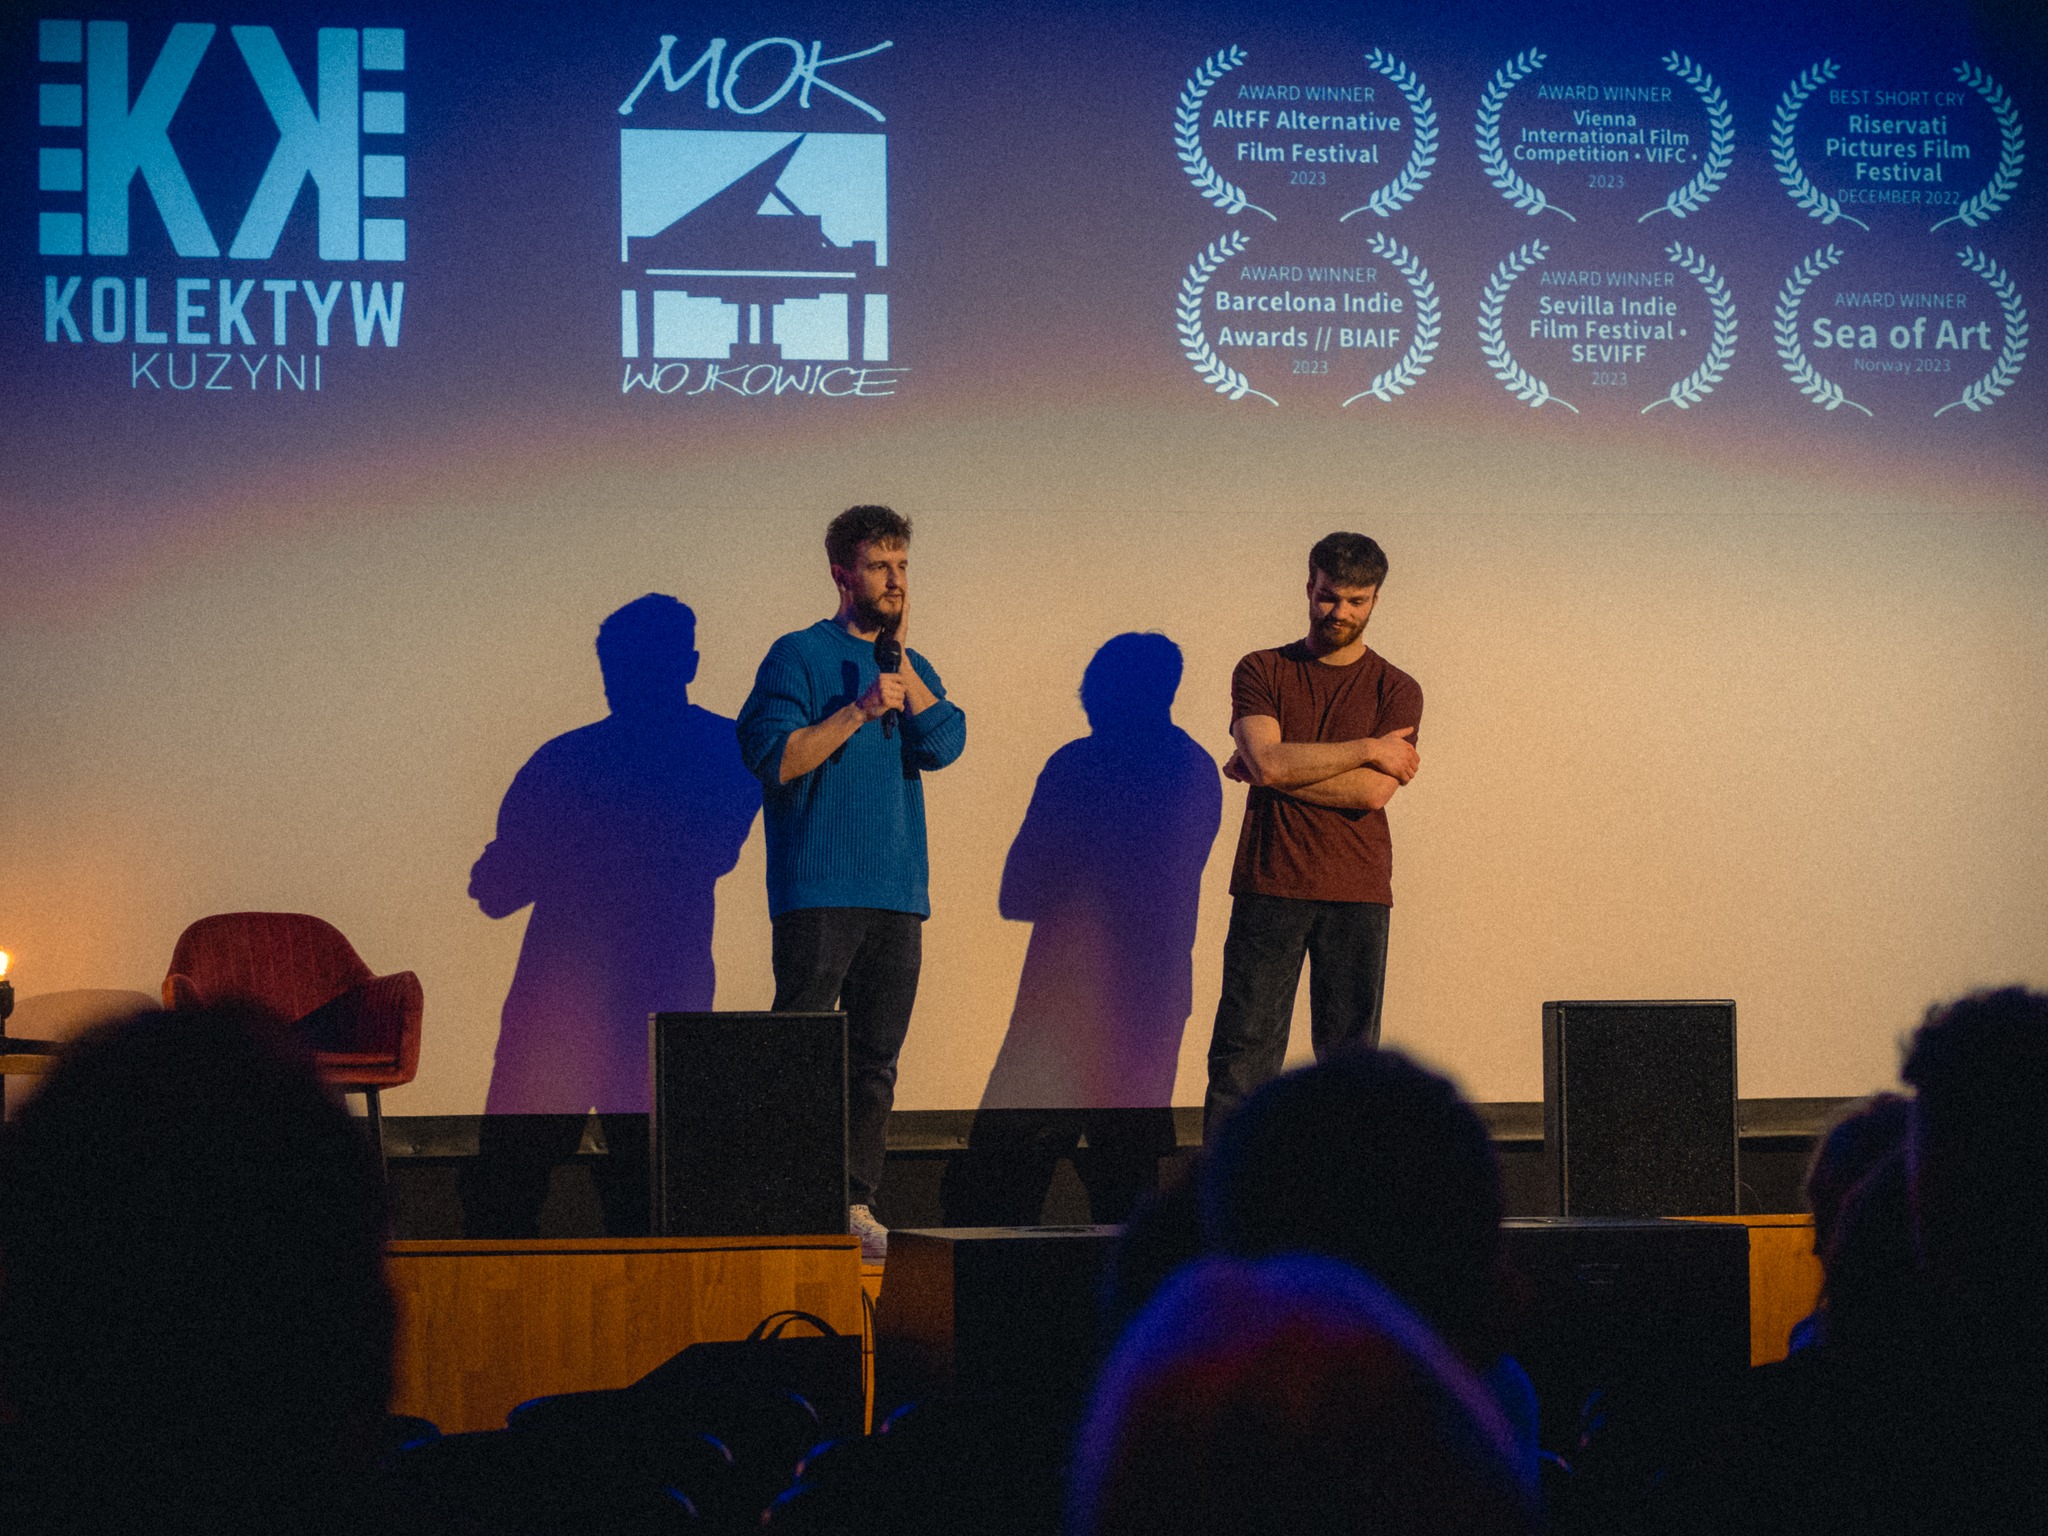 Twórcy podczas pokazu filmu krótkometrażowego "Poranki, kiedy wracamy do domów" stworzonego przez Kolektyw Kuzyni. Na scenie Miejskiego Ośrodka Kultury w Wojkowicach